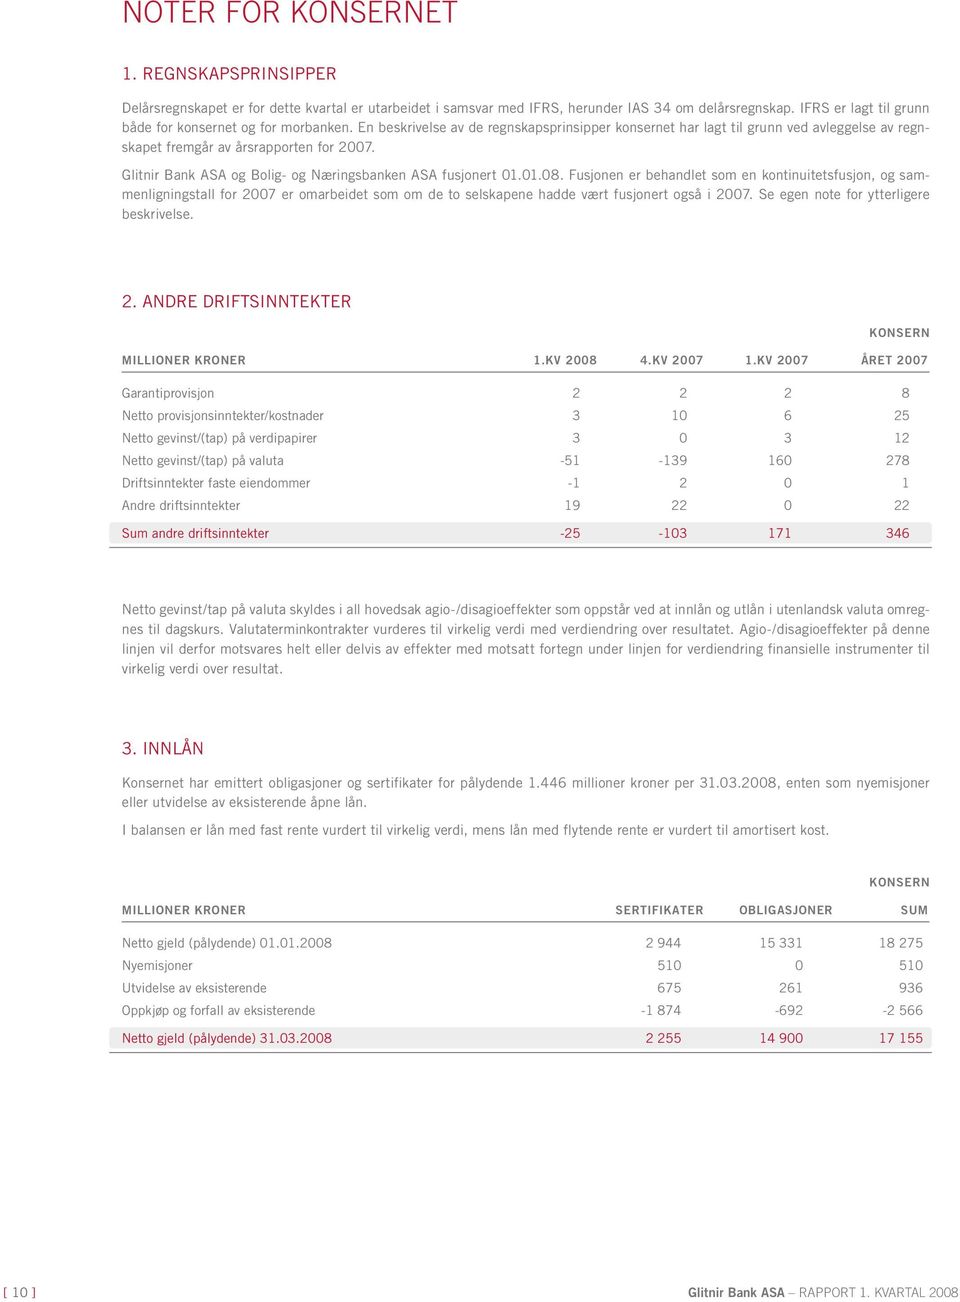 Glitnir Bank ASA og Bolig- og Næringsbanken ASA fusjonert 01.01.08.